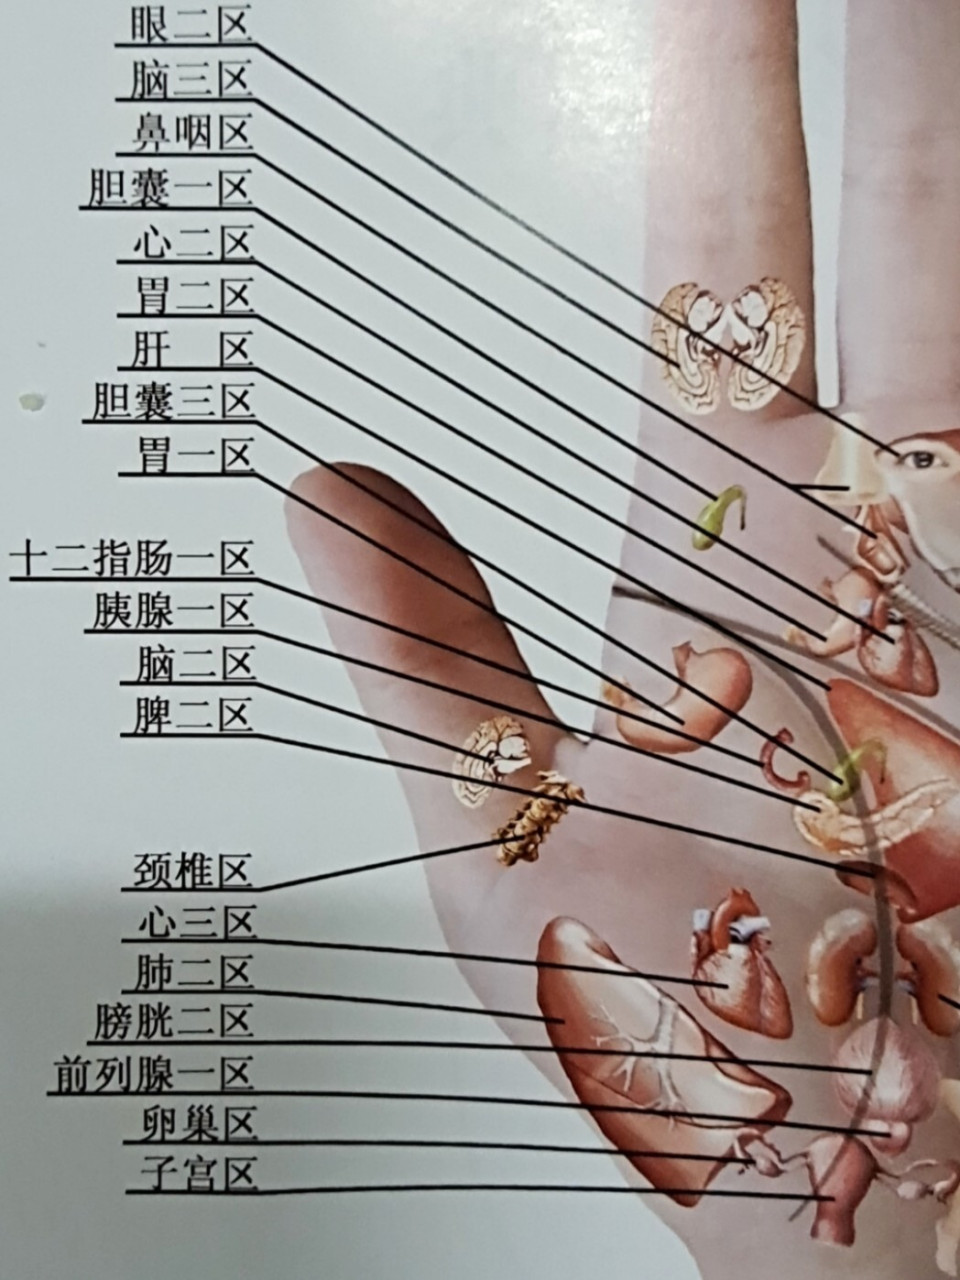 手是人体的末梢,左右手有12条经络通过